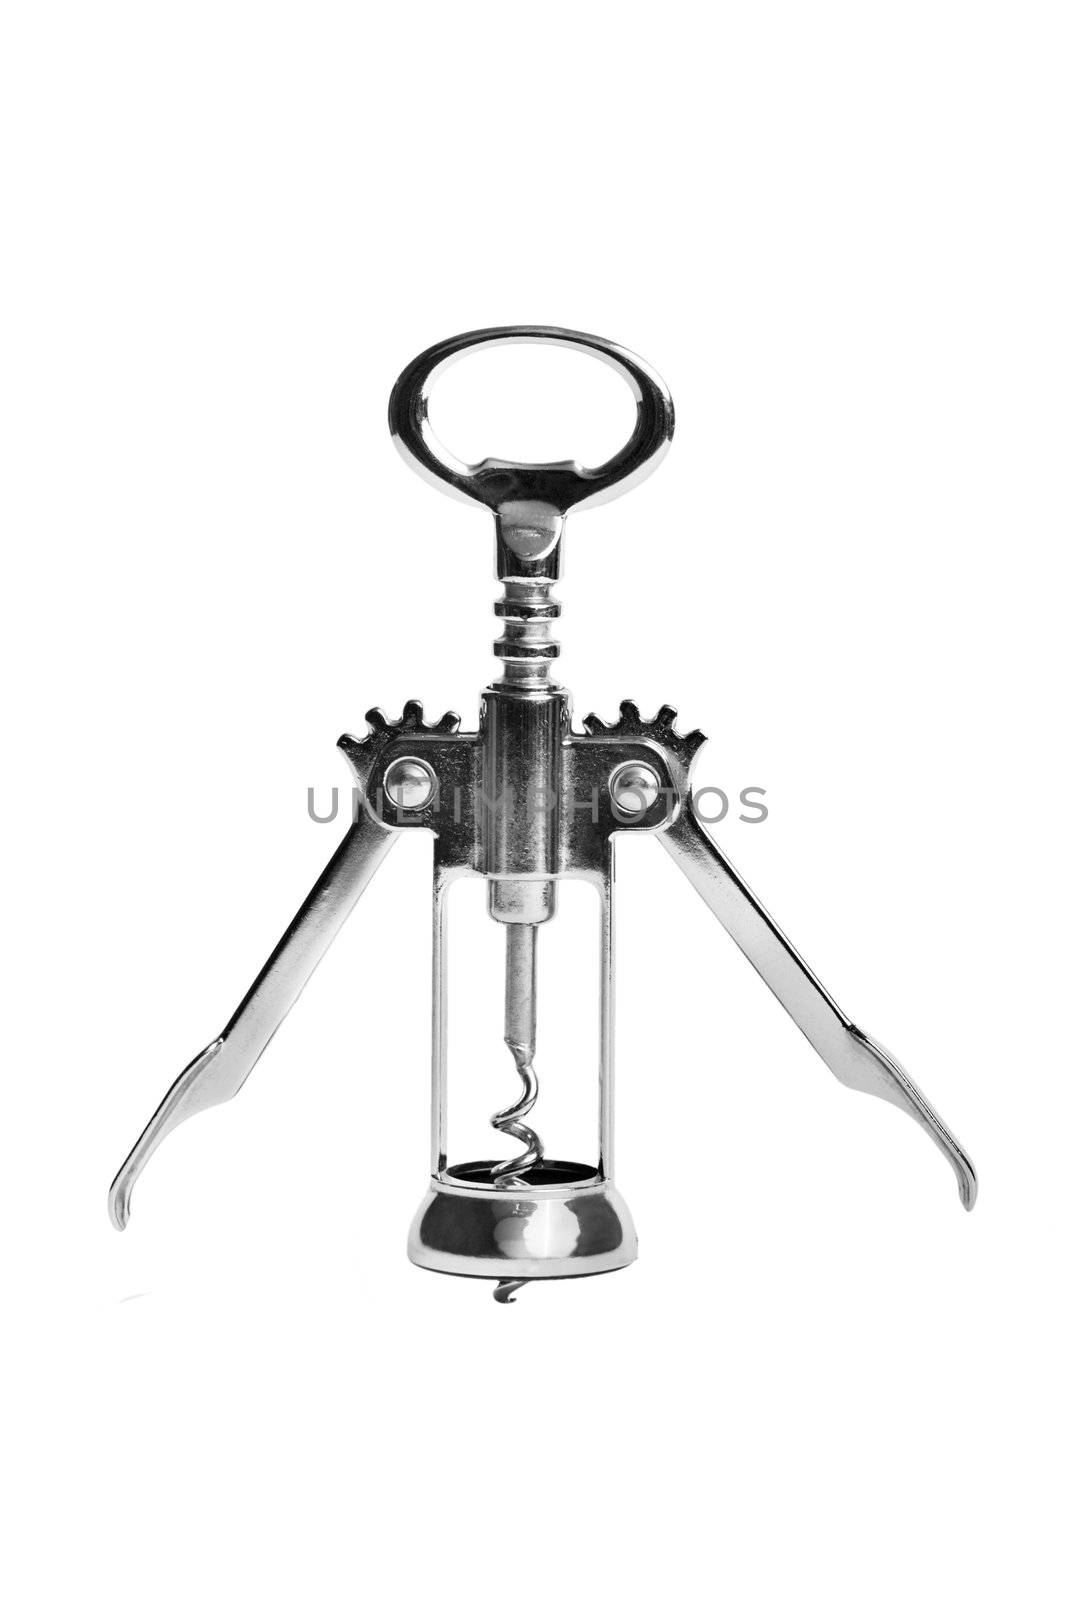 Bottle opener corkscrew